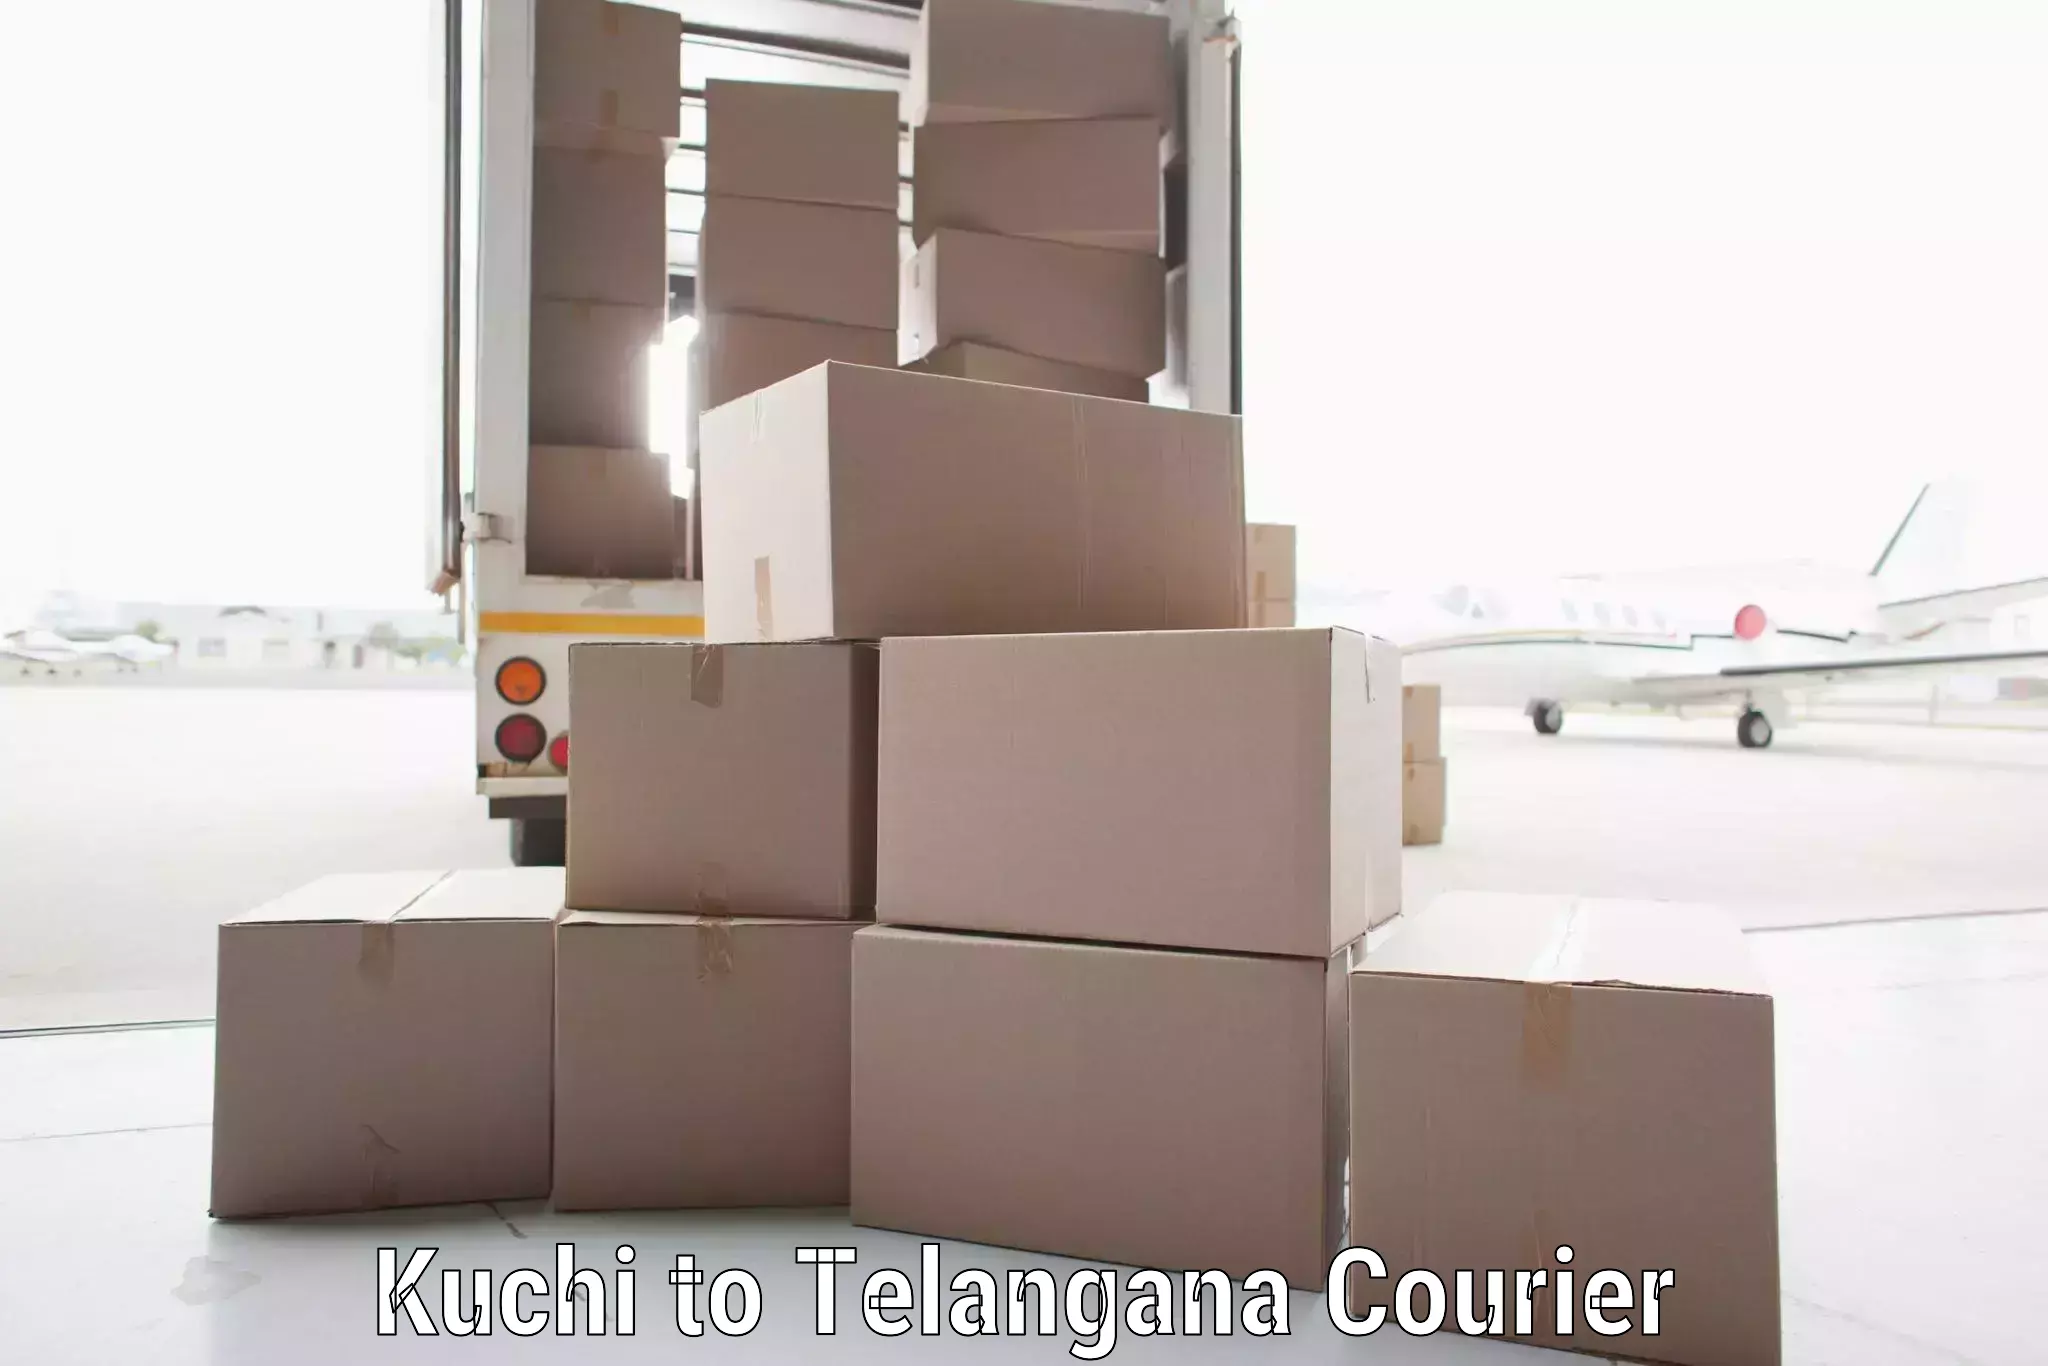 On-demand shipping options Kuchi to Wyra